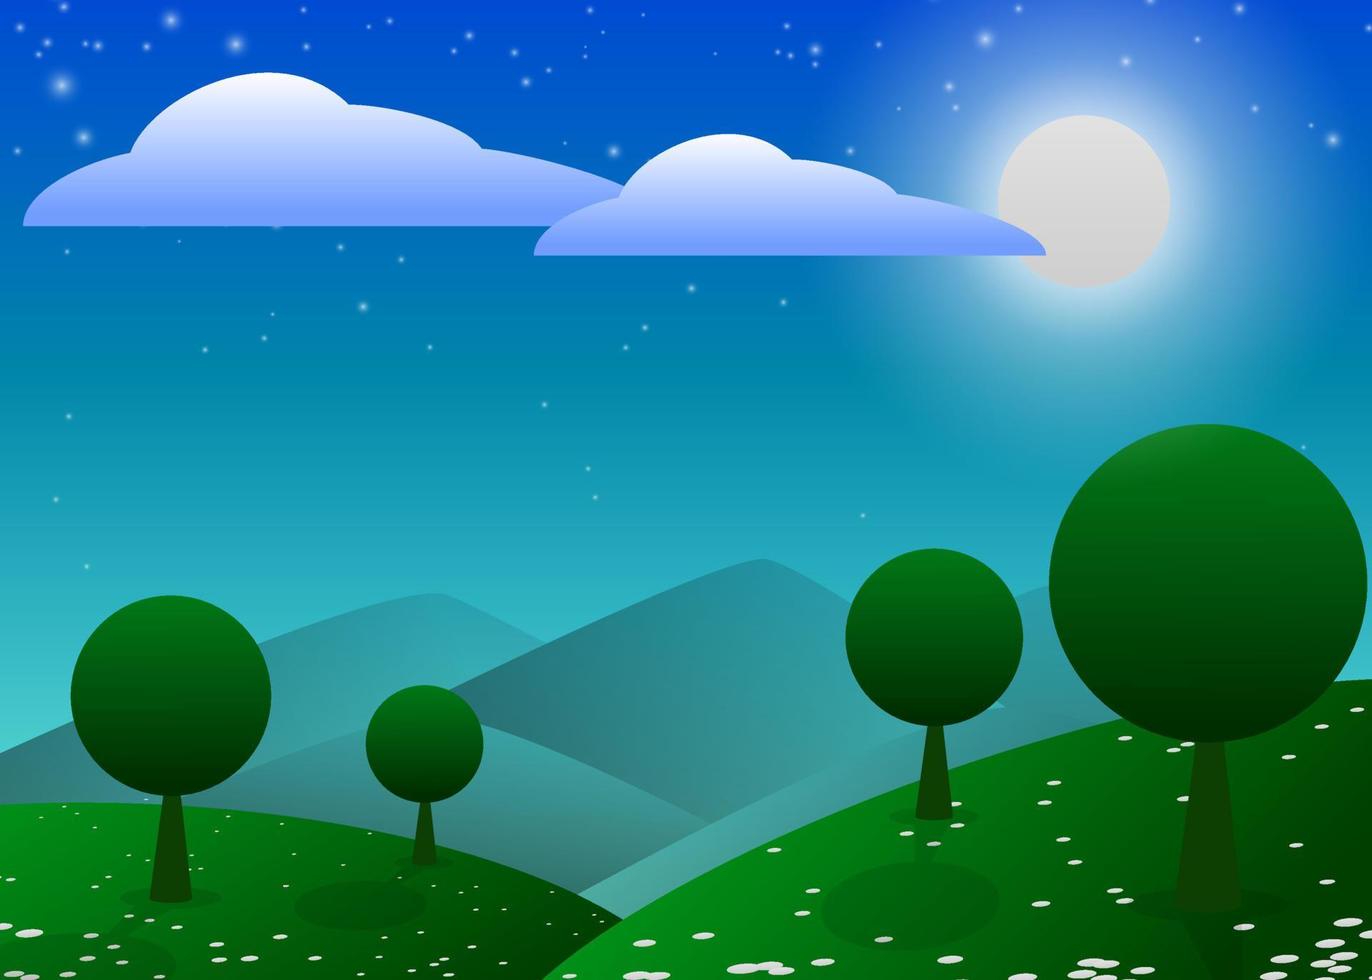 ilustração de uma floresta limpa e verde sob a lua cheia brilhante. ilustração vetorial. vetor